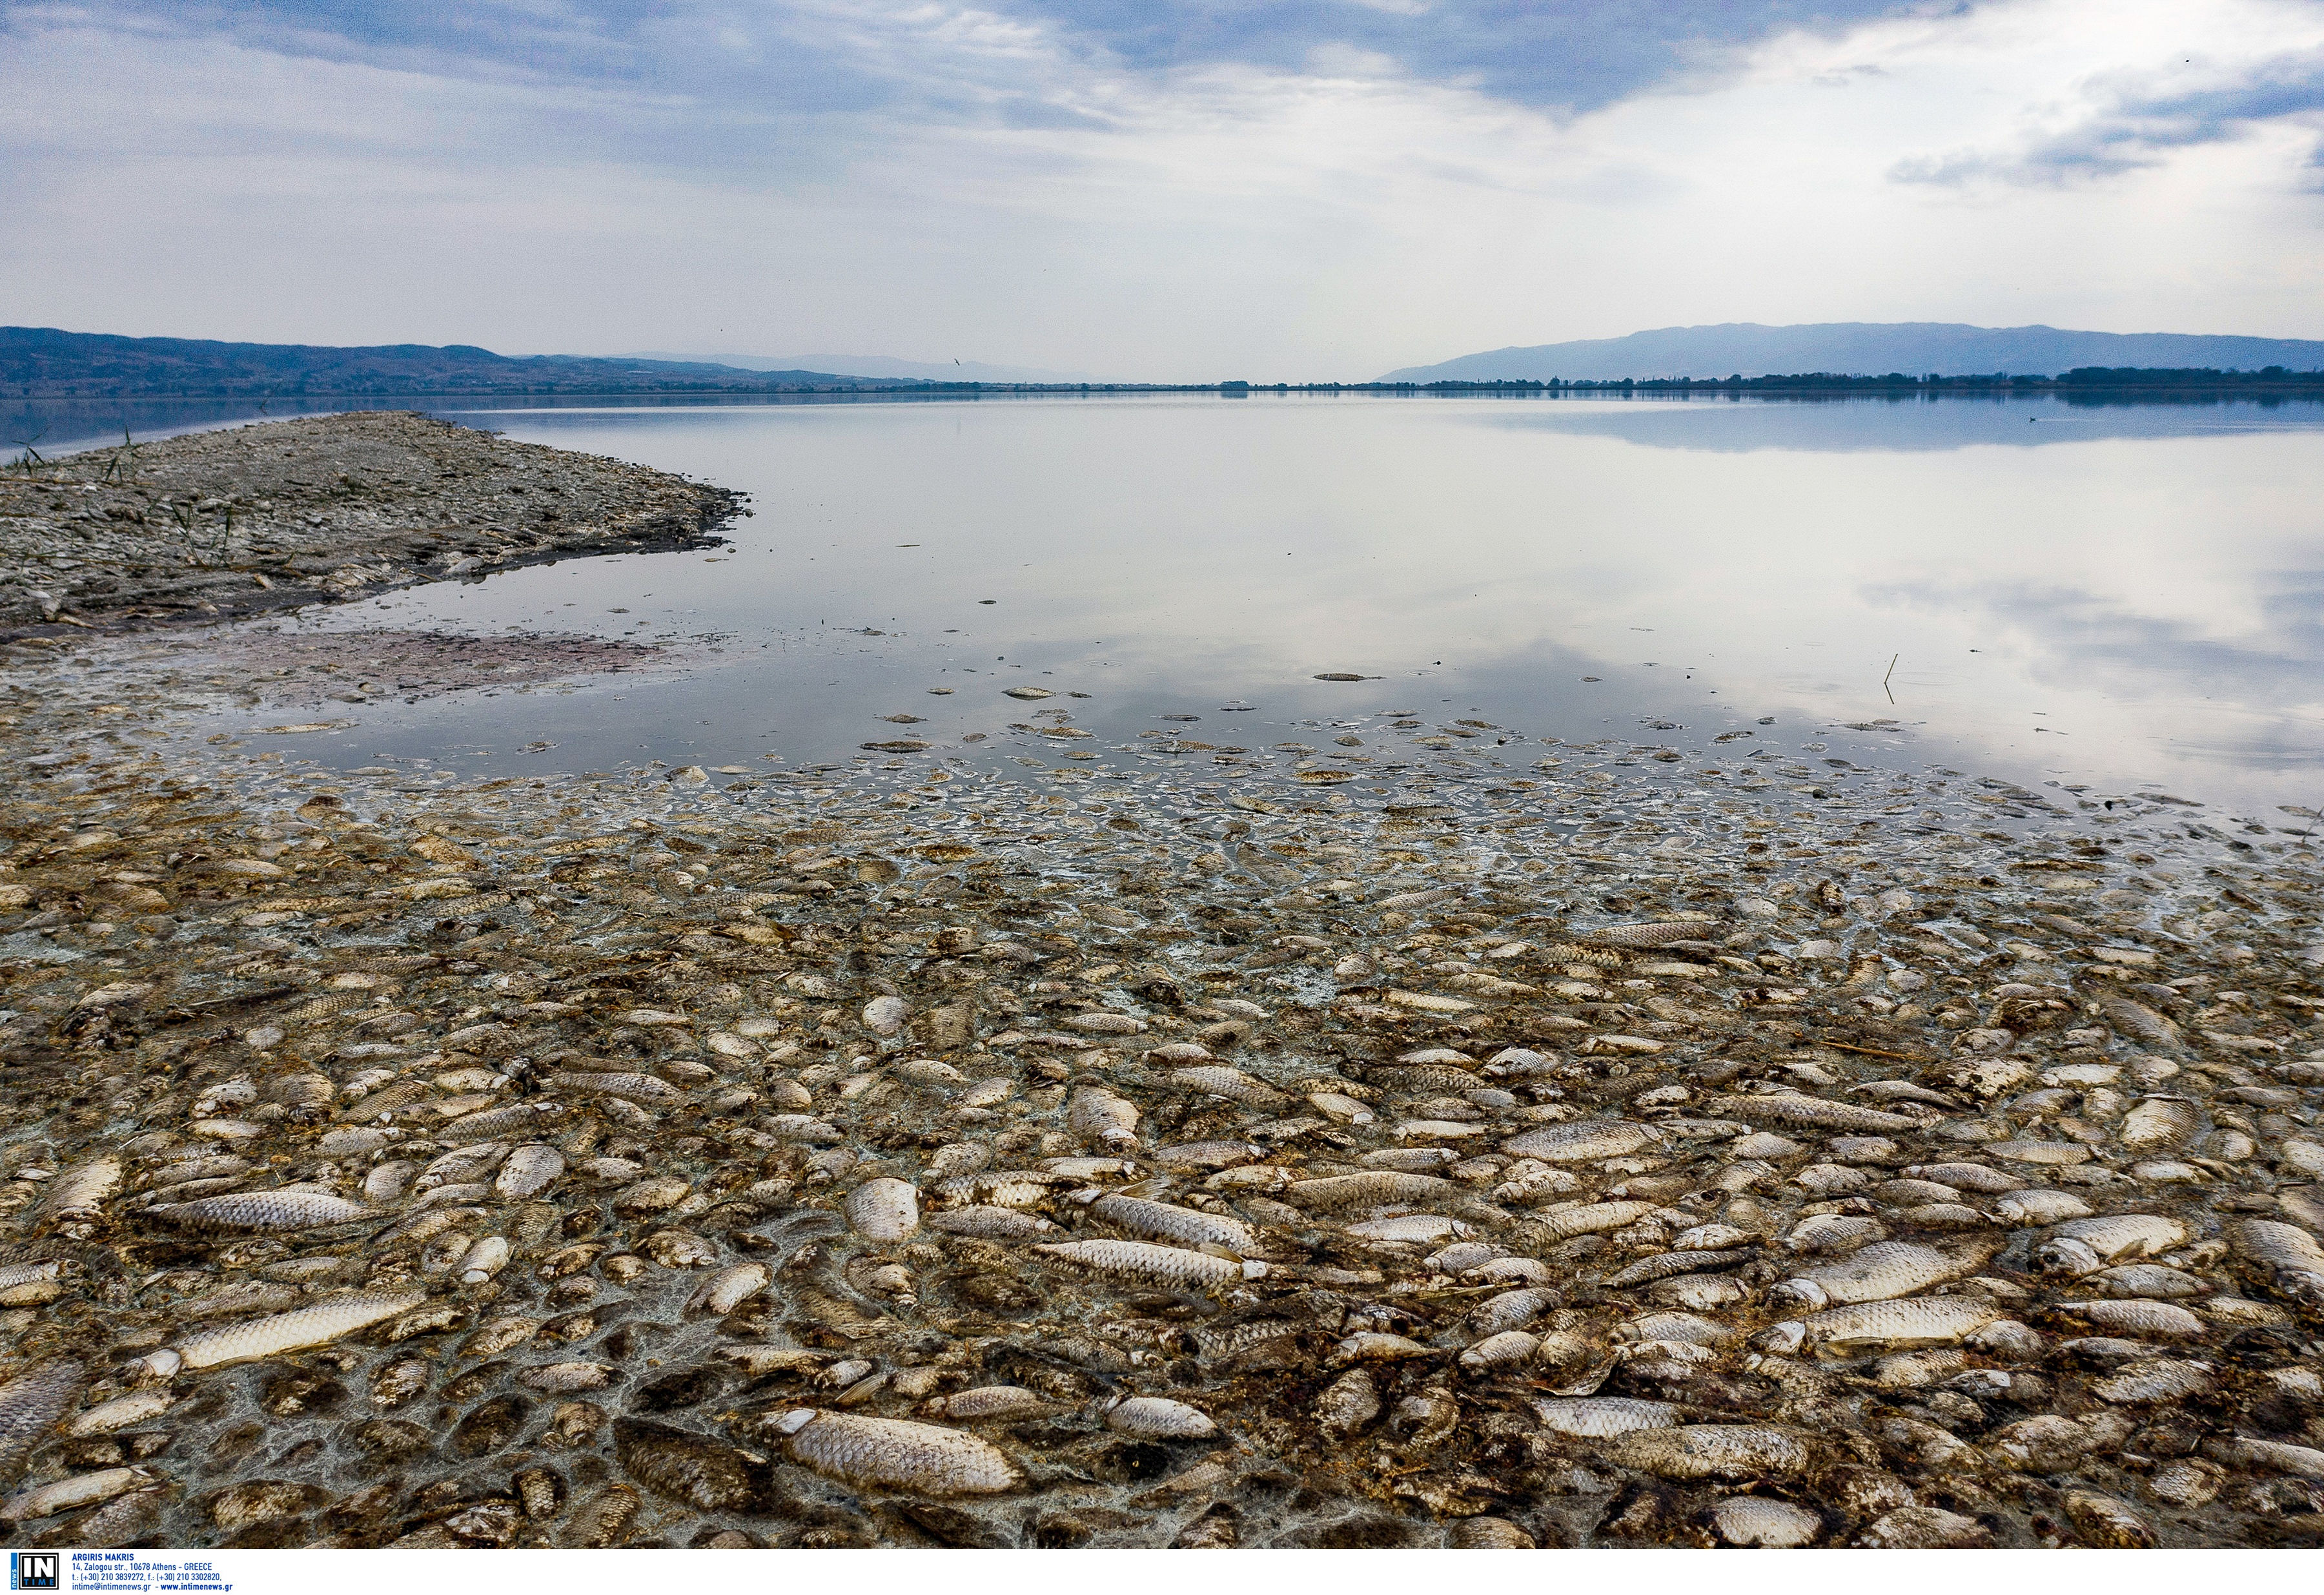 Εκατοντάδες νεκρά ψάρια στη λιμνοθάλασσα του Αιτωλικού! video